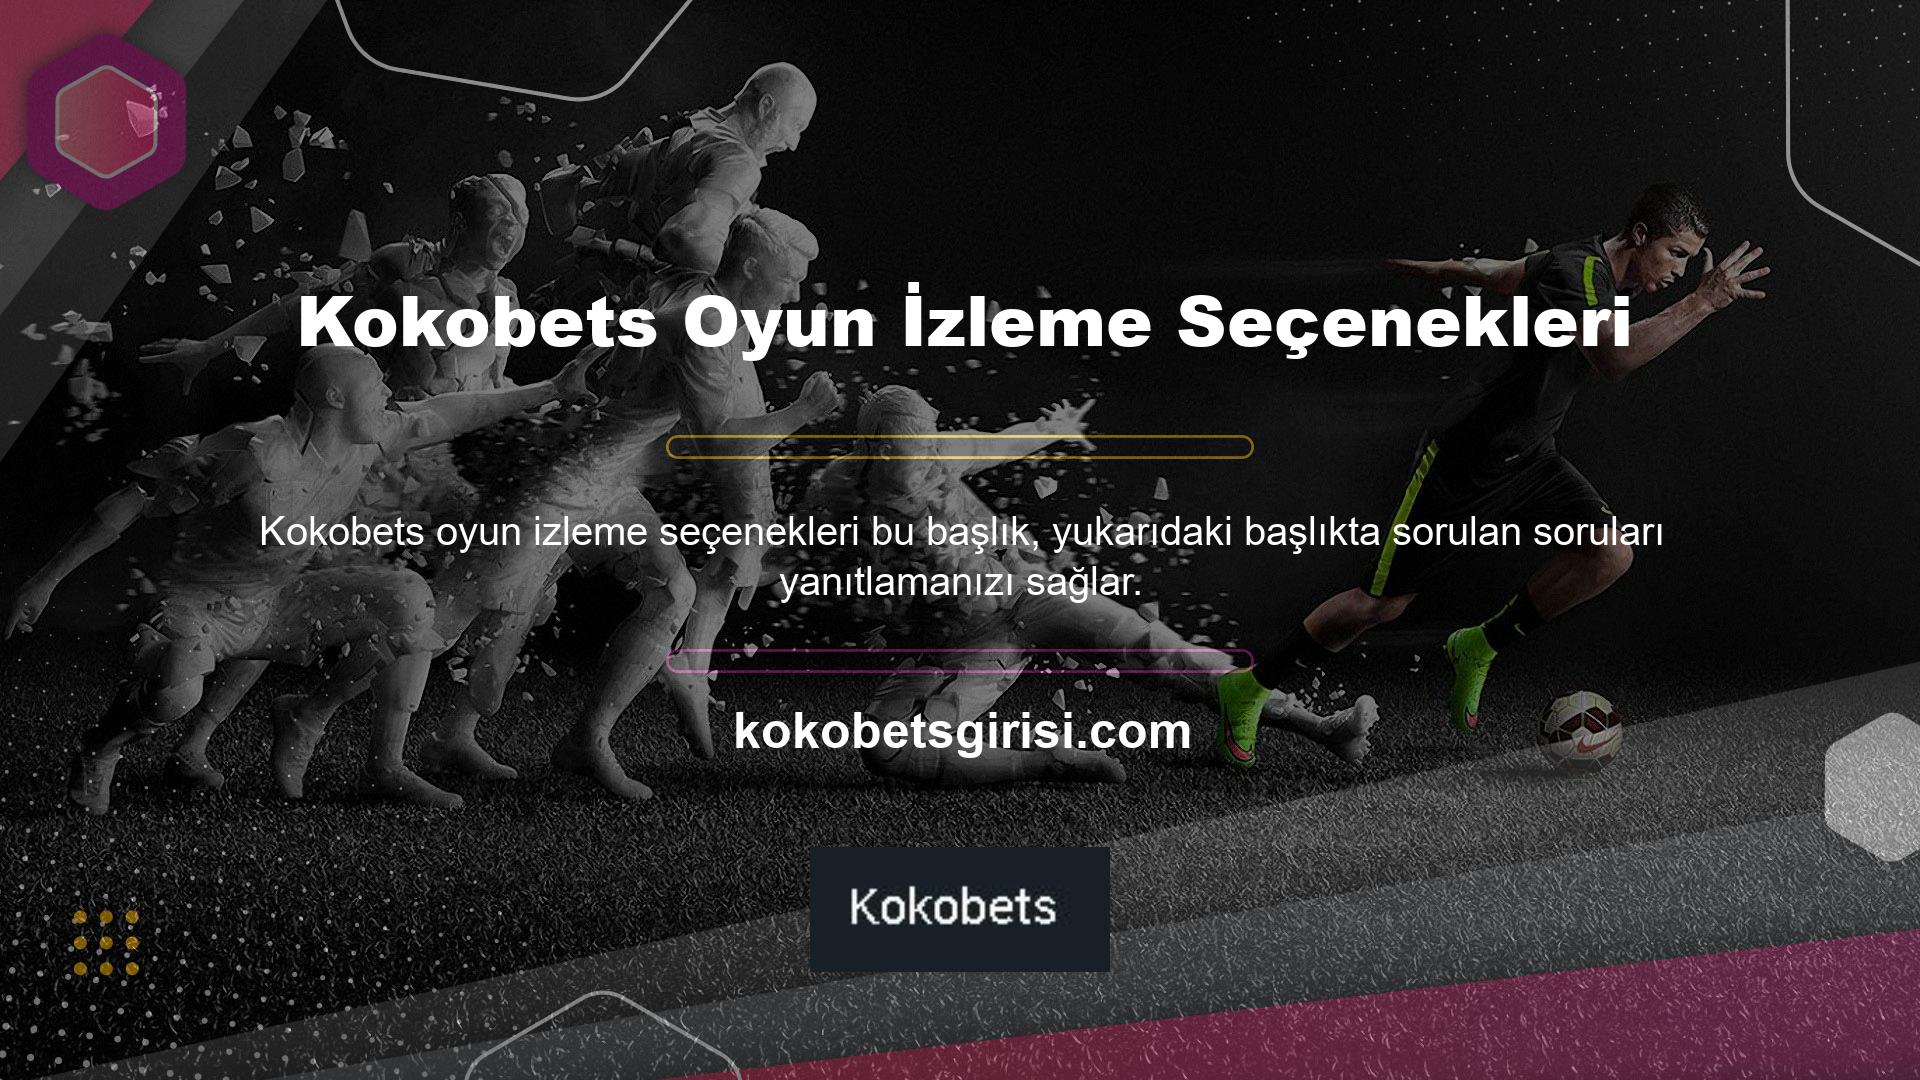 Kokobets bahis sitesi günümüz bahis piyasasında uzun süredir faaliyet gösteren ve çoğu kullanıcı tarafından bilinen, Türkiye'nin en eski bahis platformlarından biridir